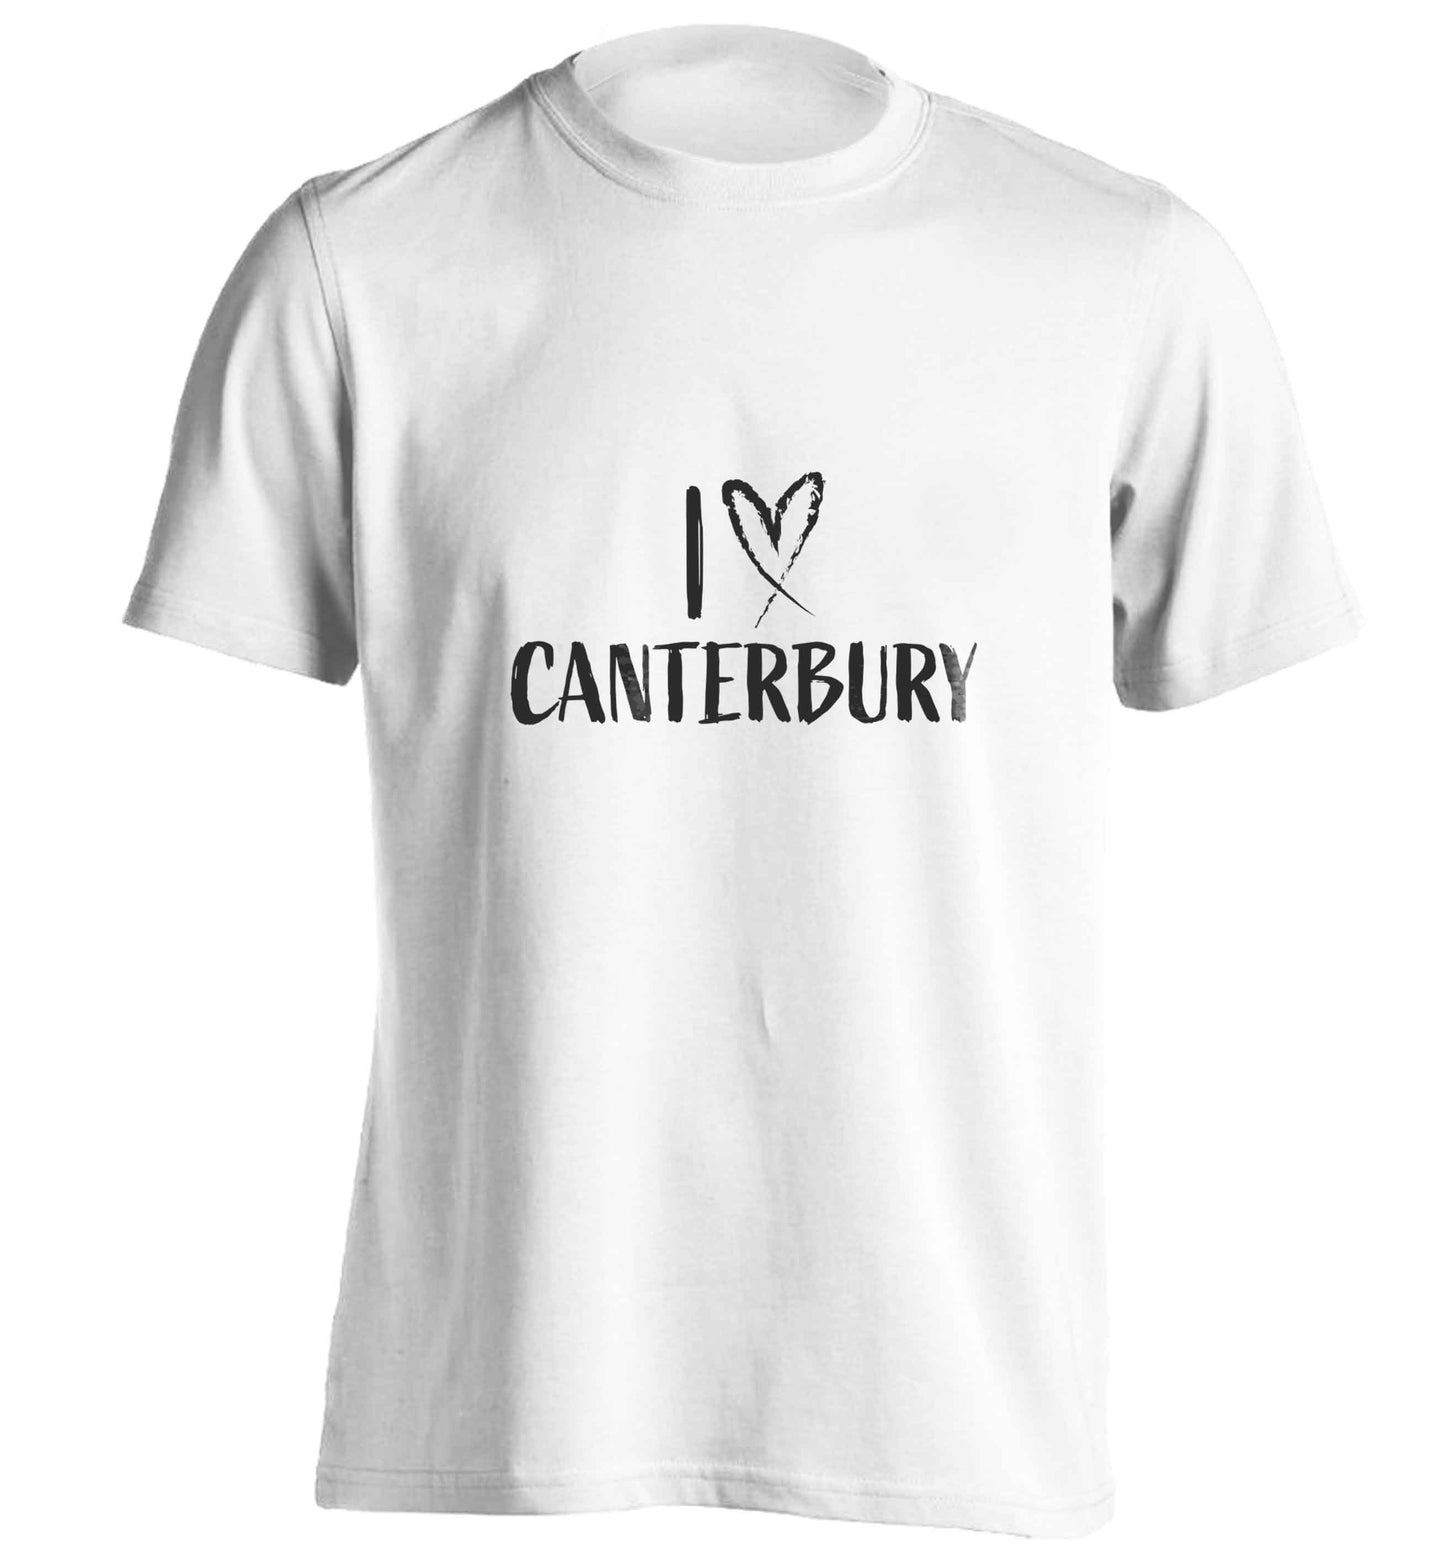 I love Canterbury adults unisex white Tshirt 2XL